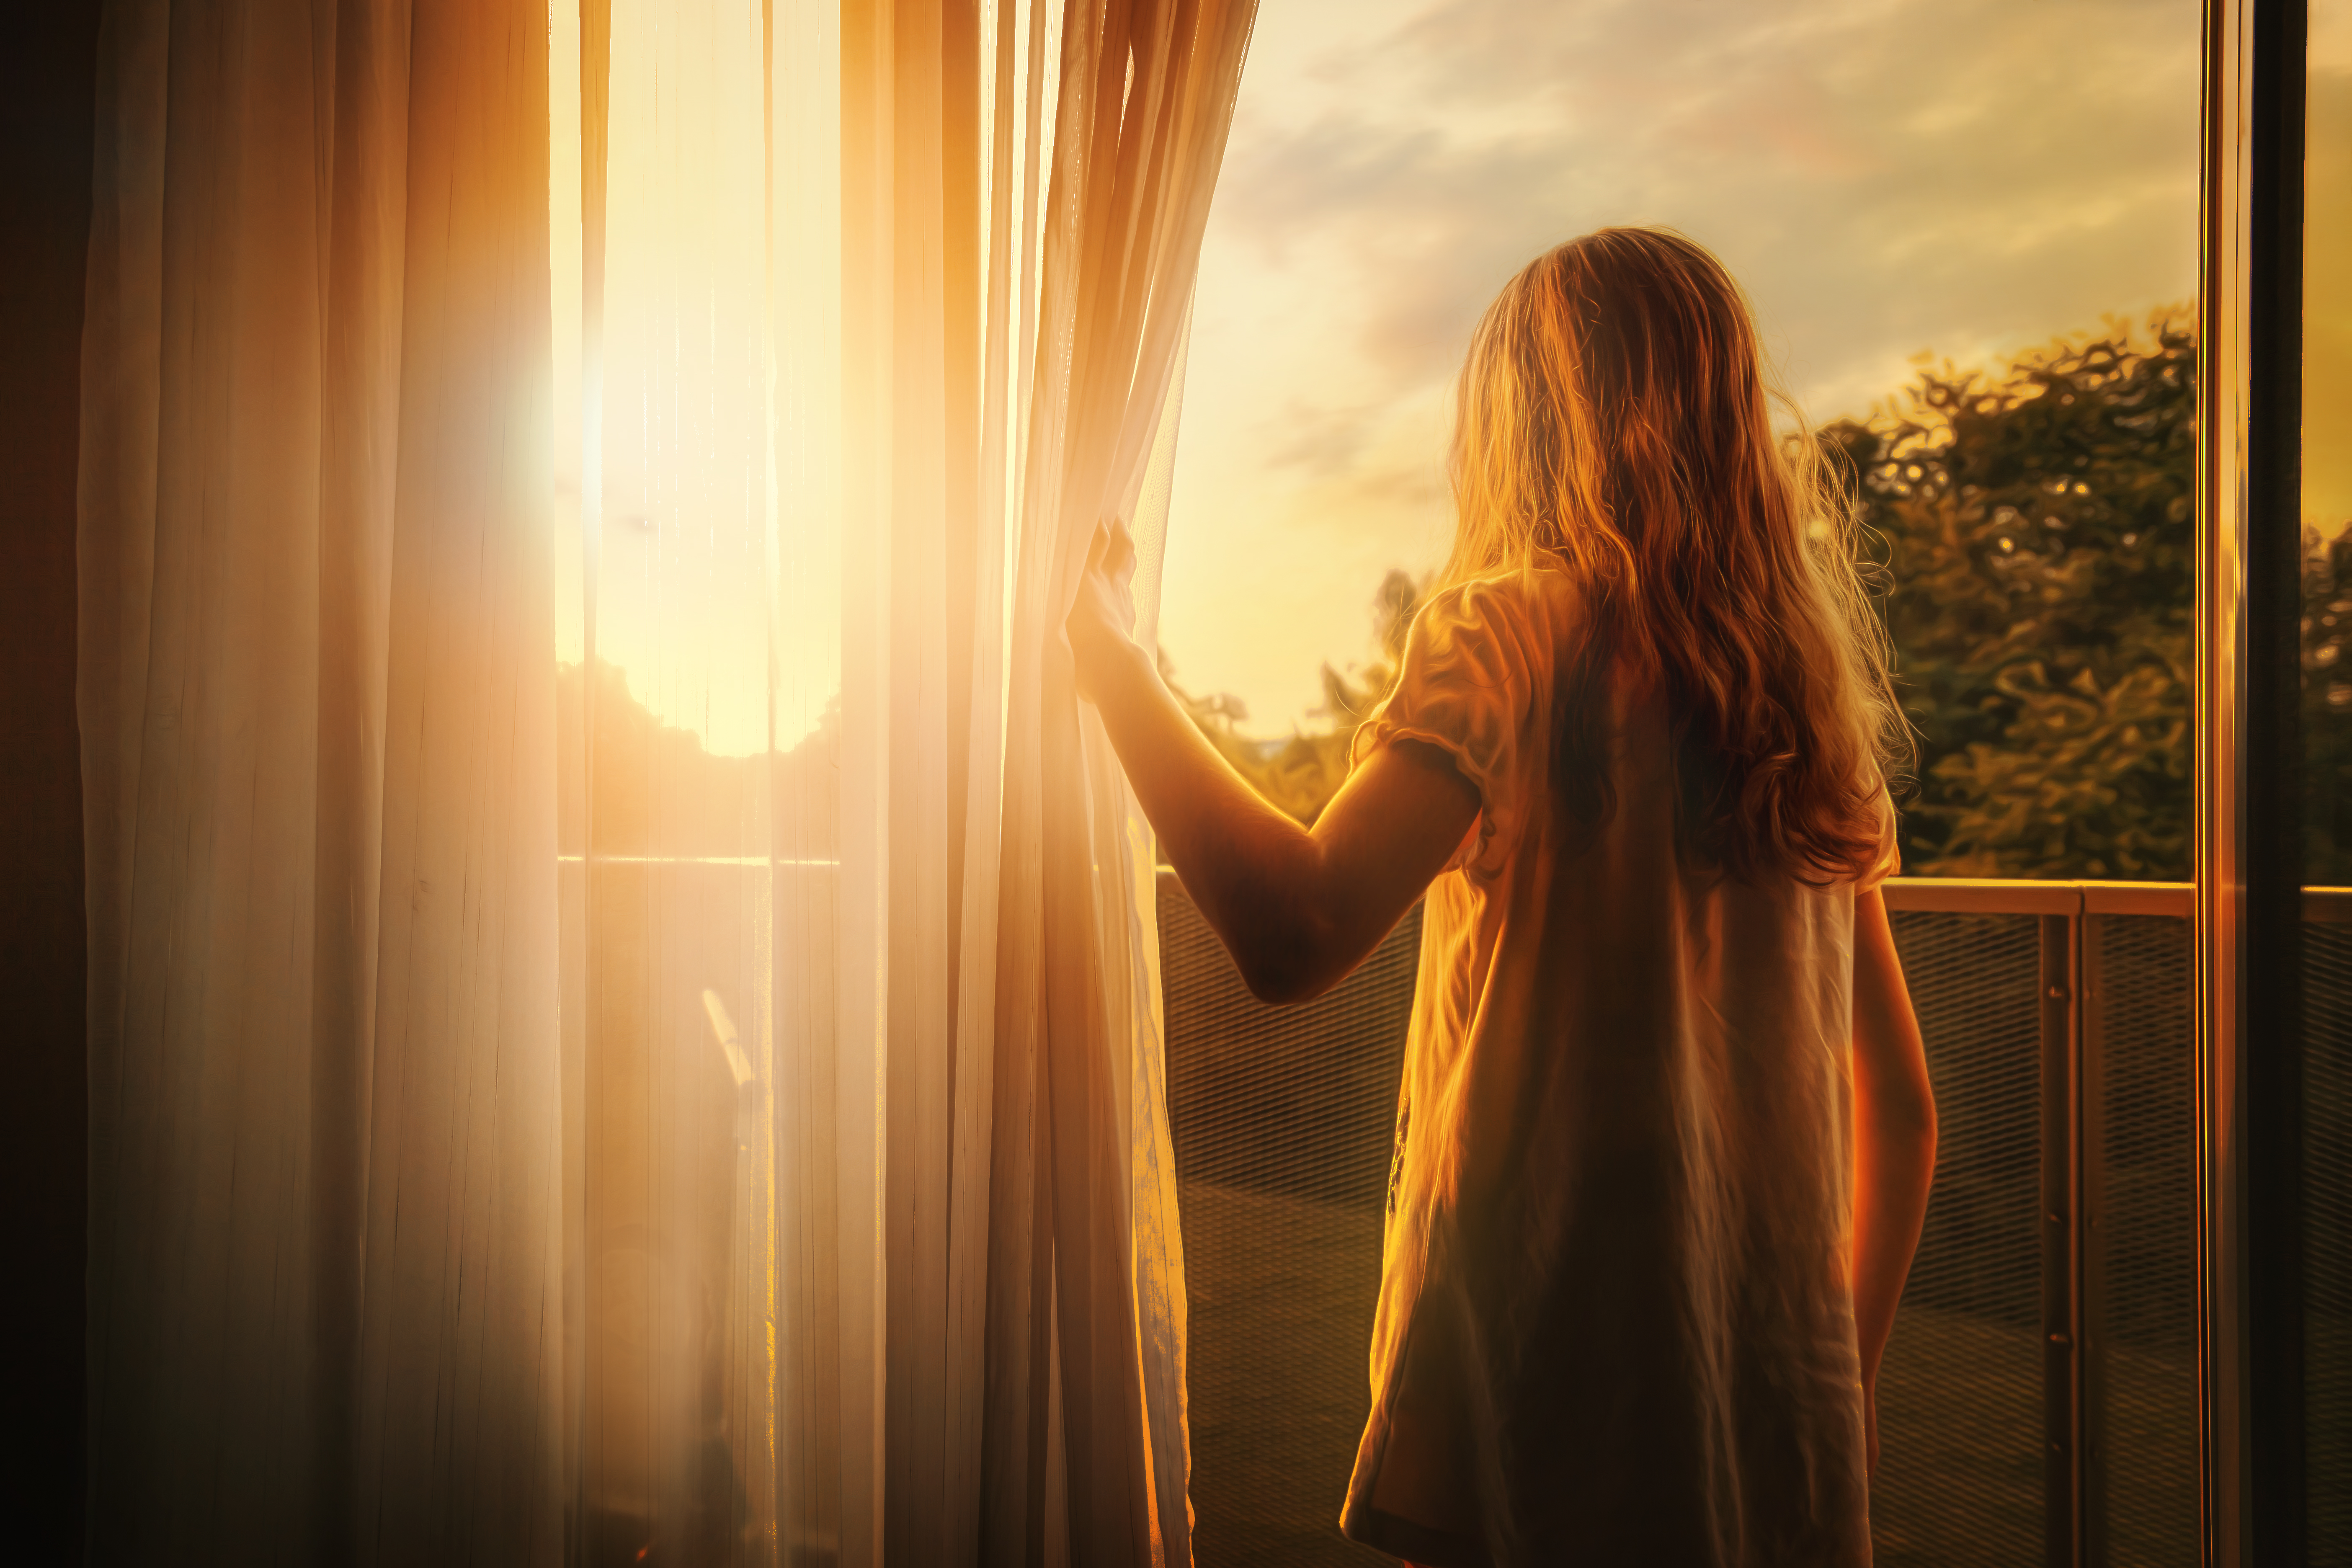 Dawn Sunrise Sun Blinds Girl Balcony 5616x3744